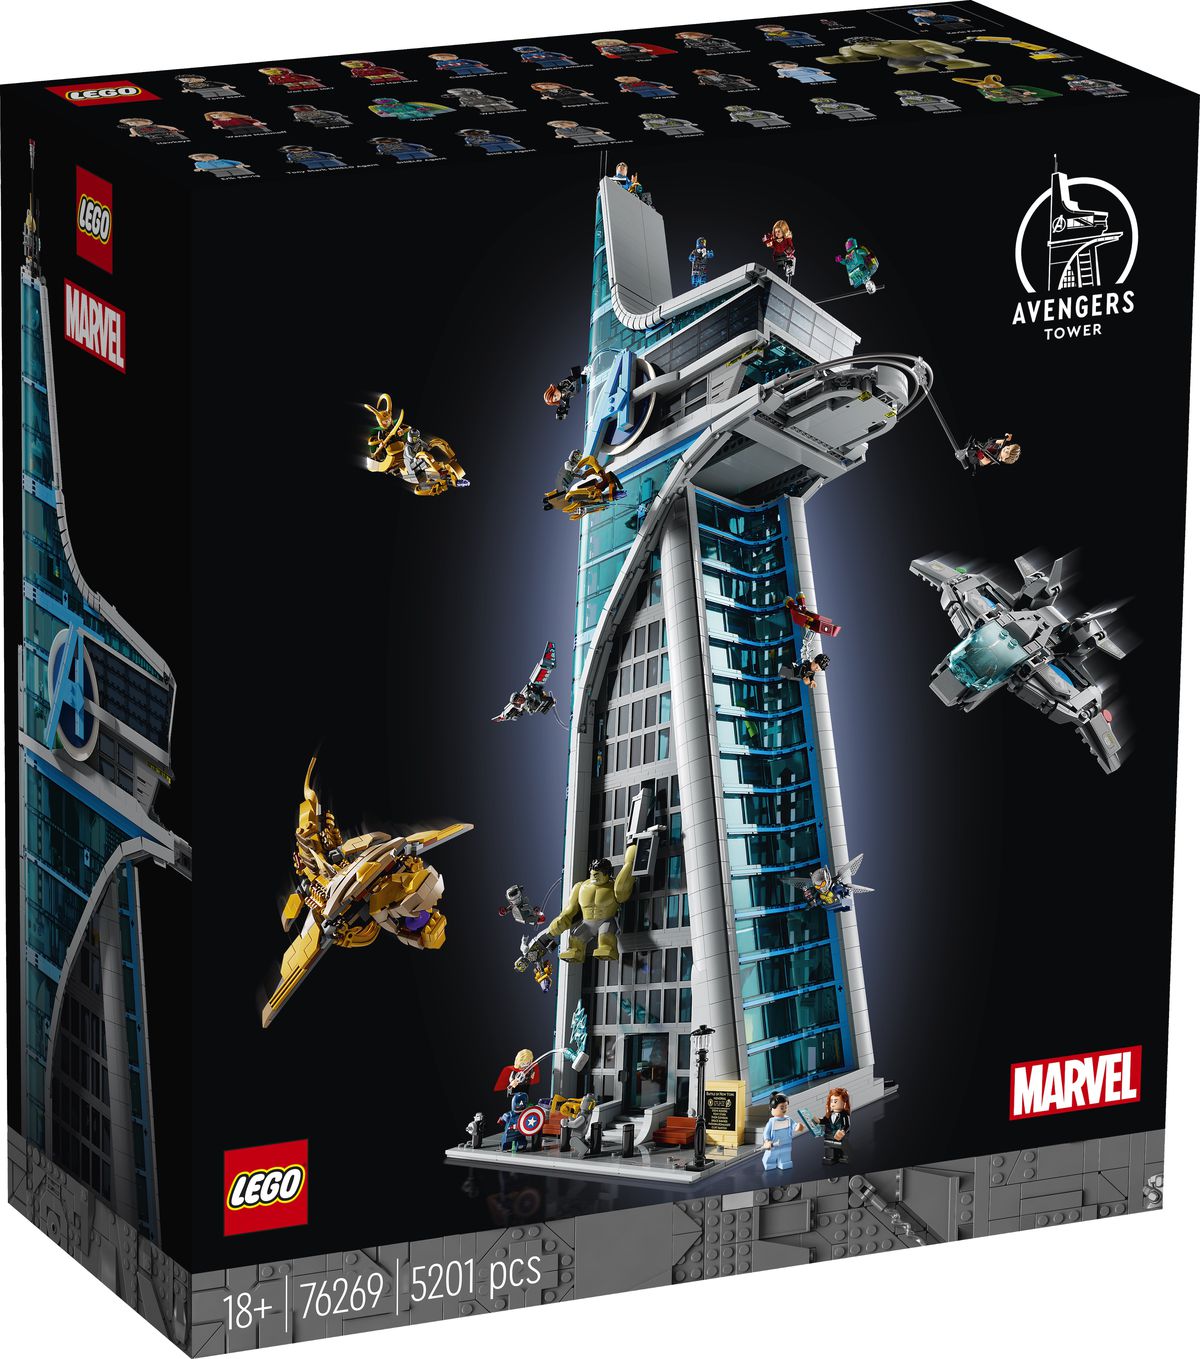 لقطة مربعة لبرج Lego Avengers، تُظهر قوات المنتقمين المختلفة وتشيتوري تتقاتل في الخارج